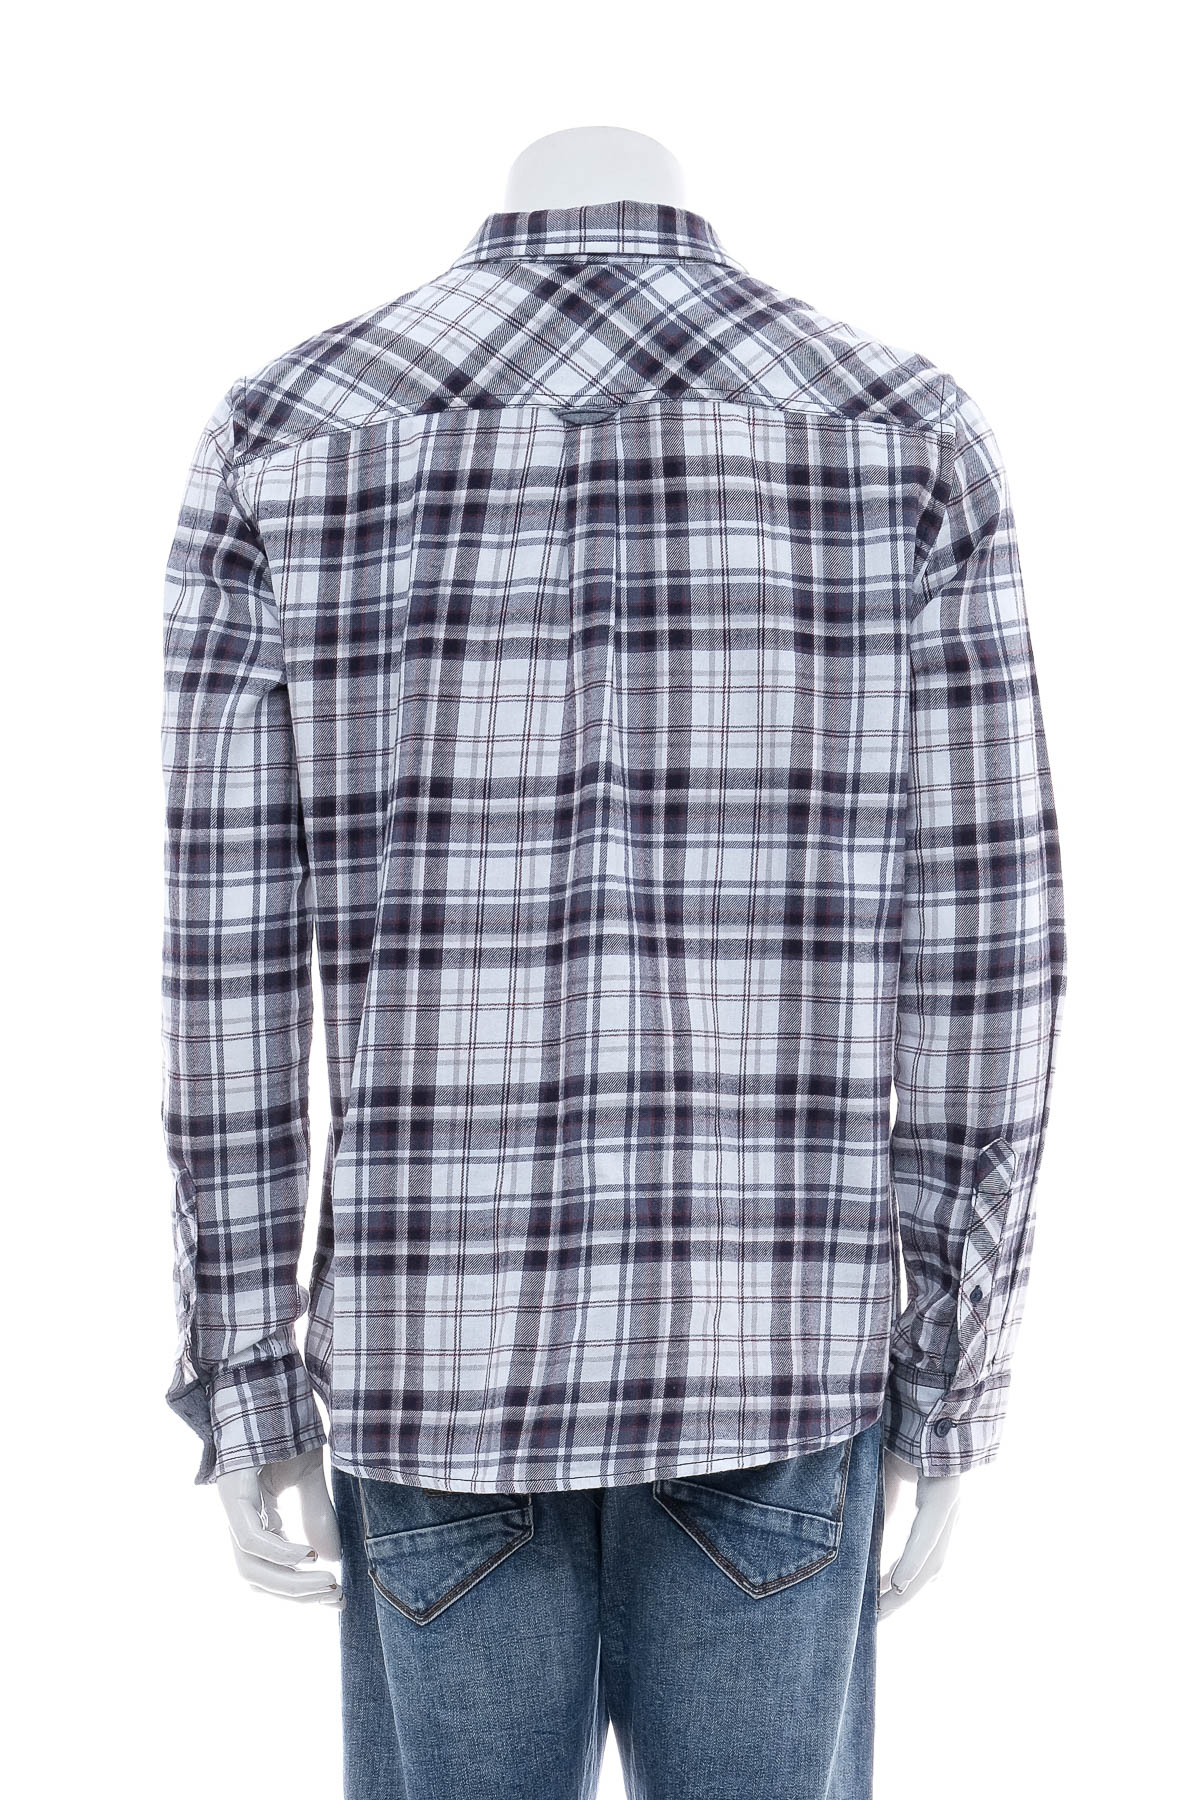 Ανδρικό πουκάμισο - SUBLEVEL - 1